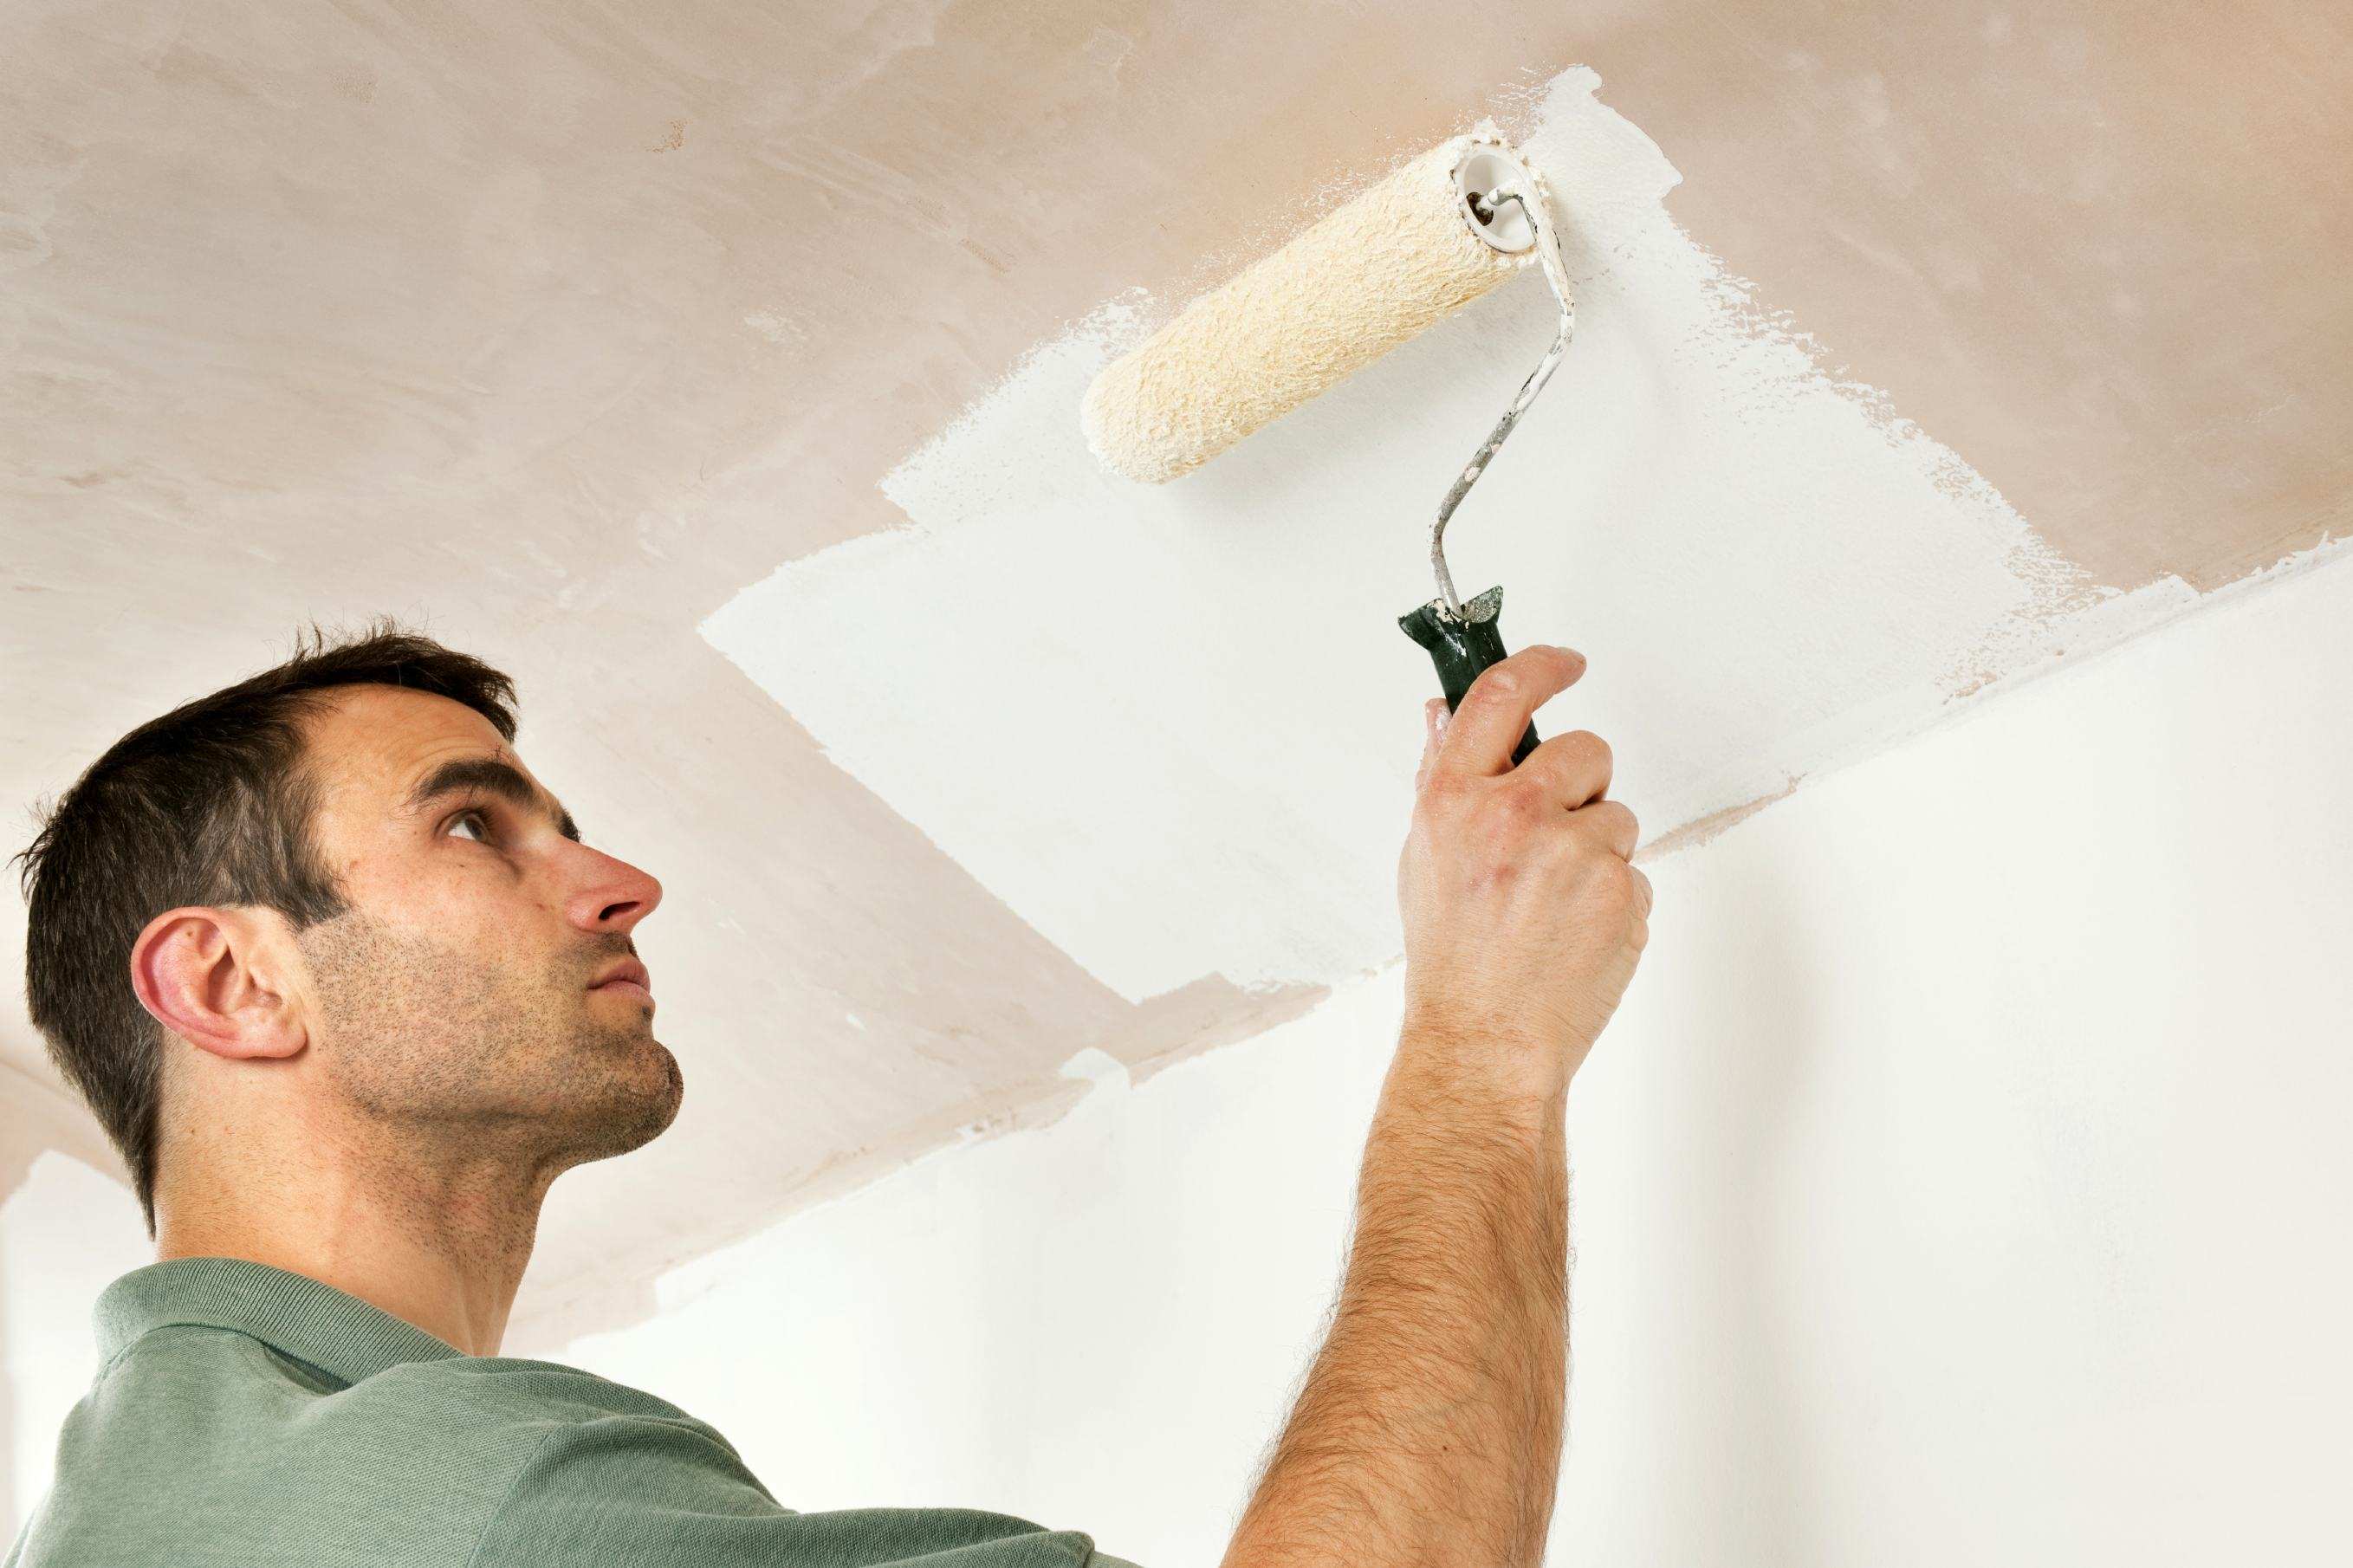 Как и чем правильно белить потолок в доме или квартире, выбираем валик для побелки